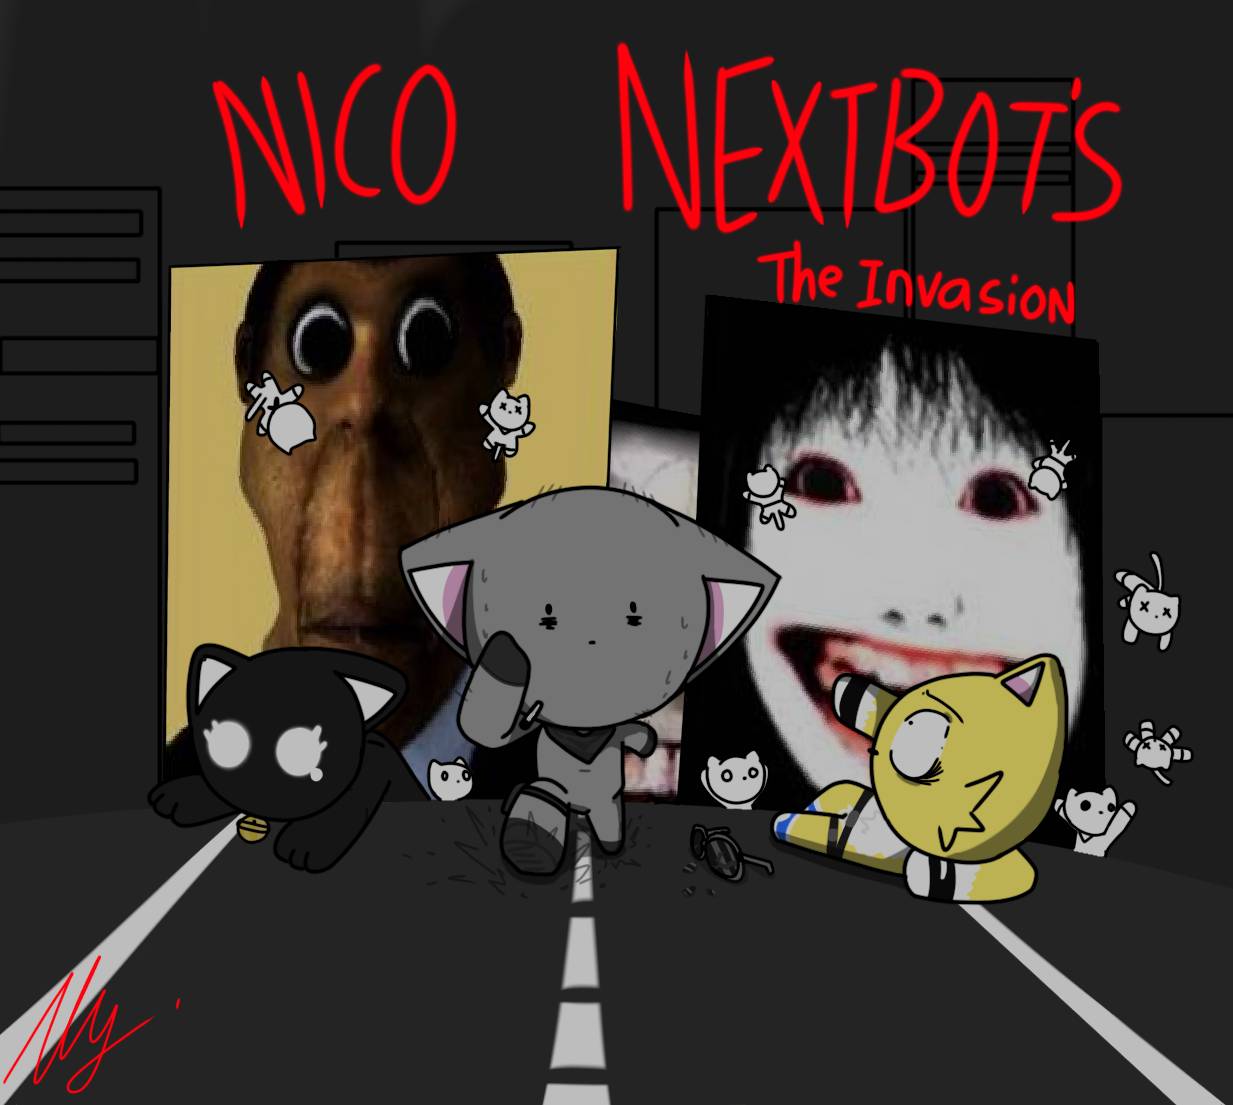 nico nextbots vs evade